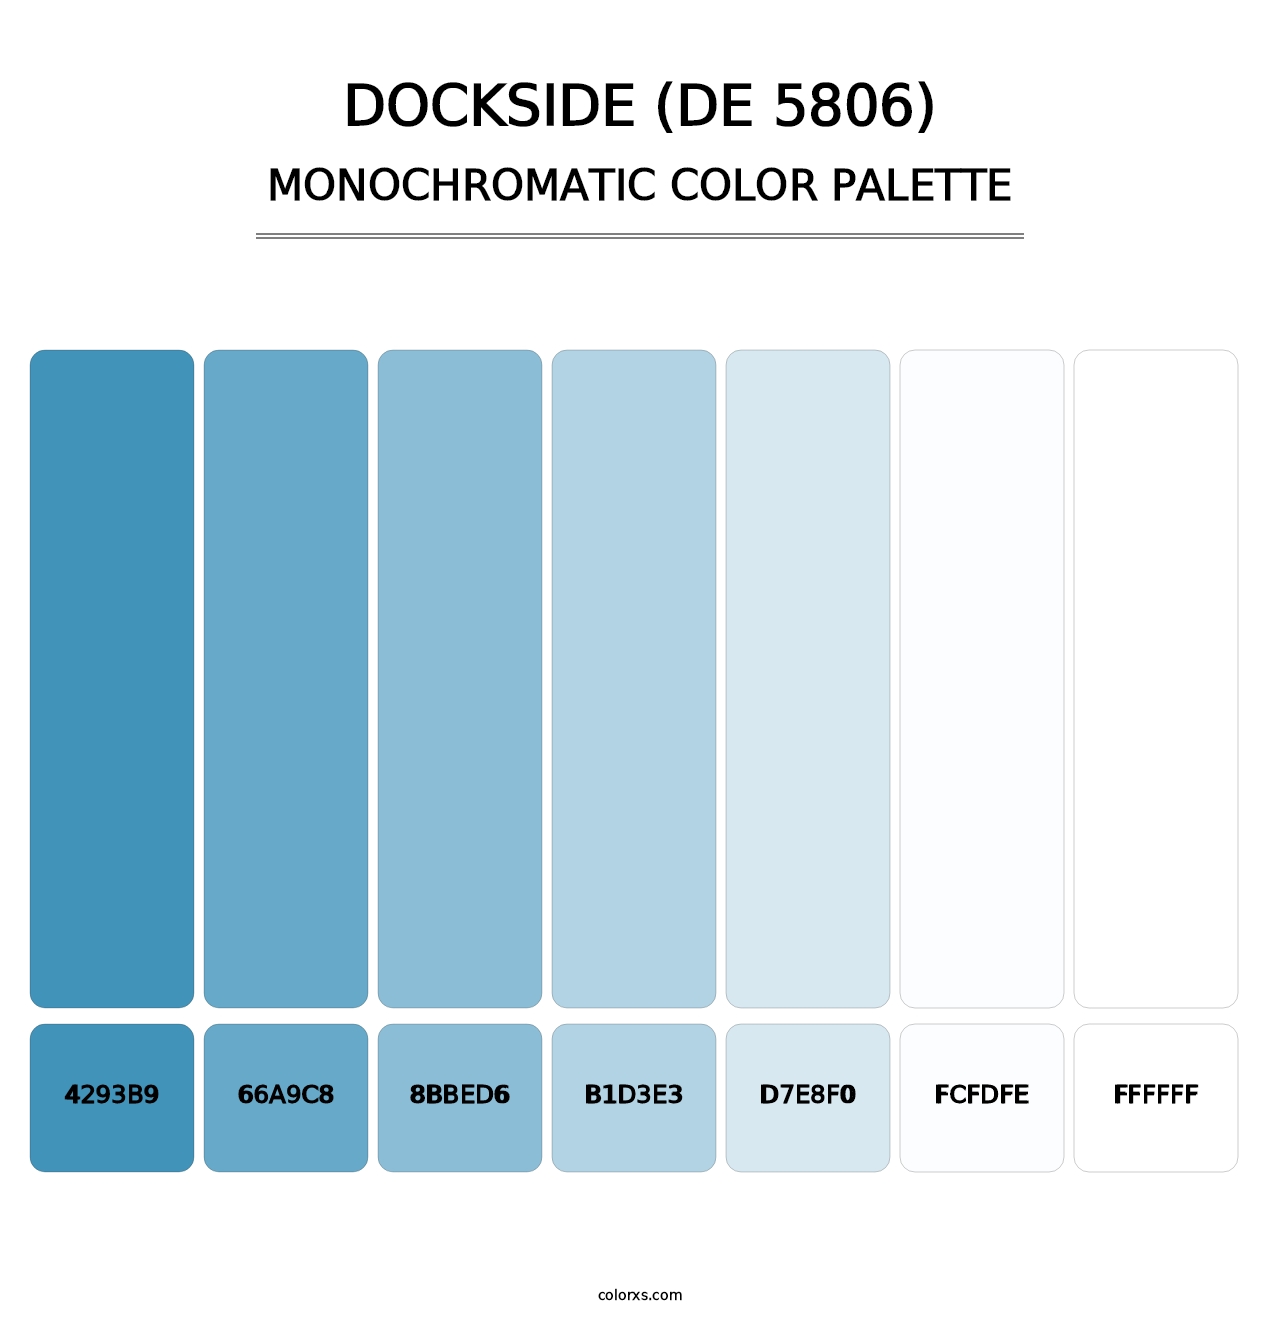 Dockside (DE 5806) - Monochromatic Color Palette